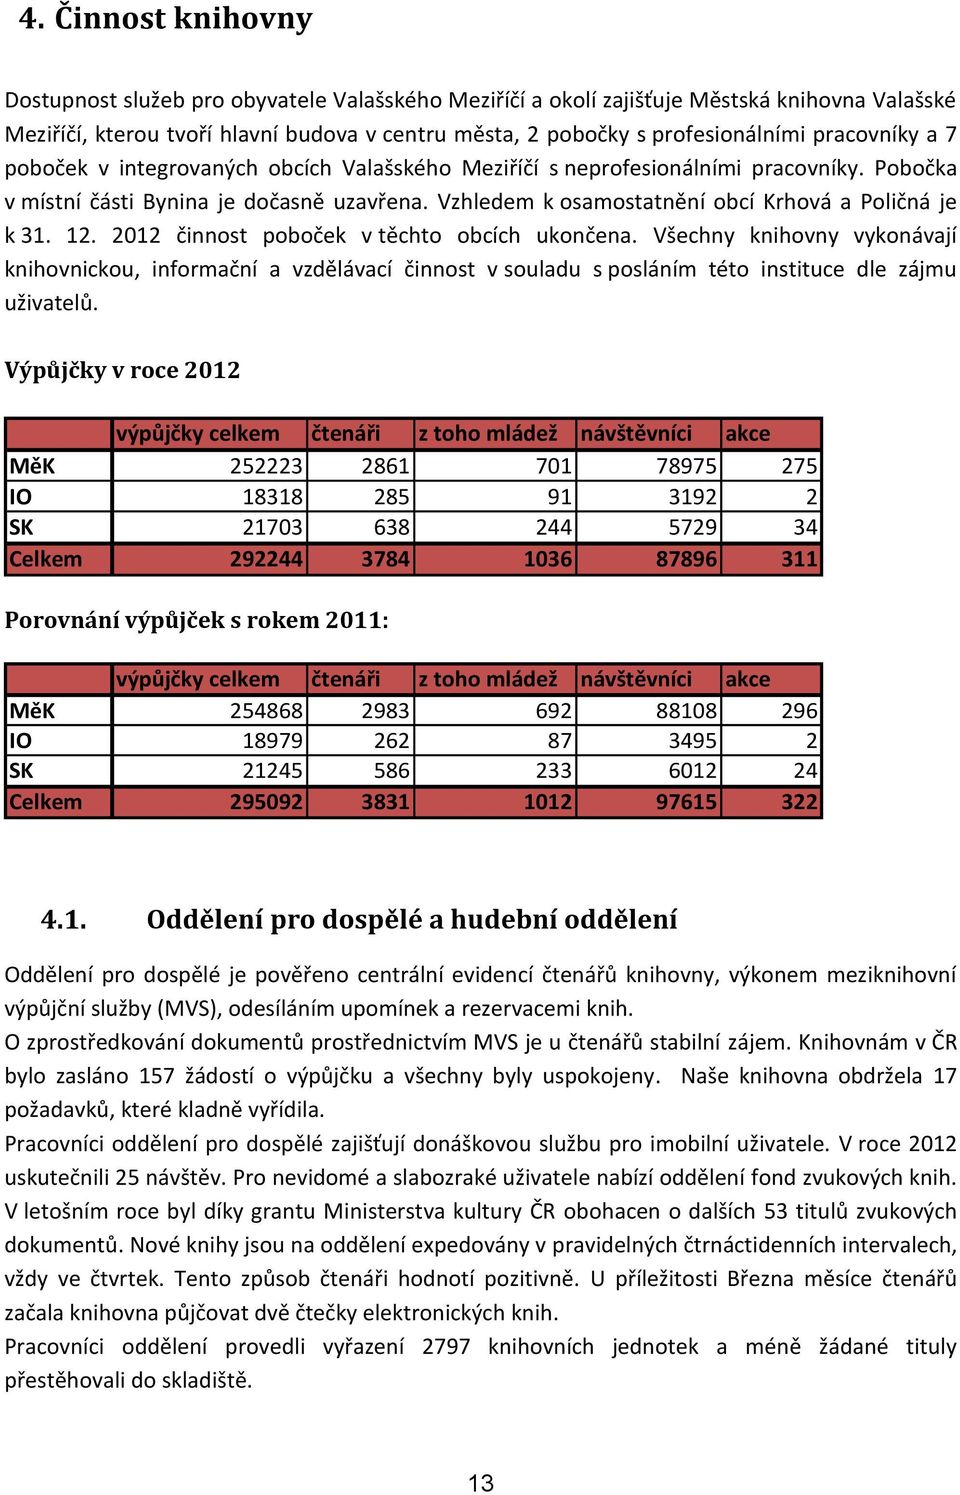 Vzhledem k osamostatnění obcí Krhová a Poličná je k 31. 12. 2012 činnost poboček v těchto obcích ukončena.